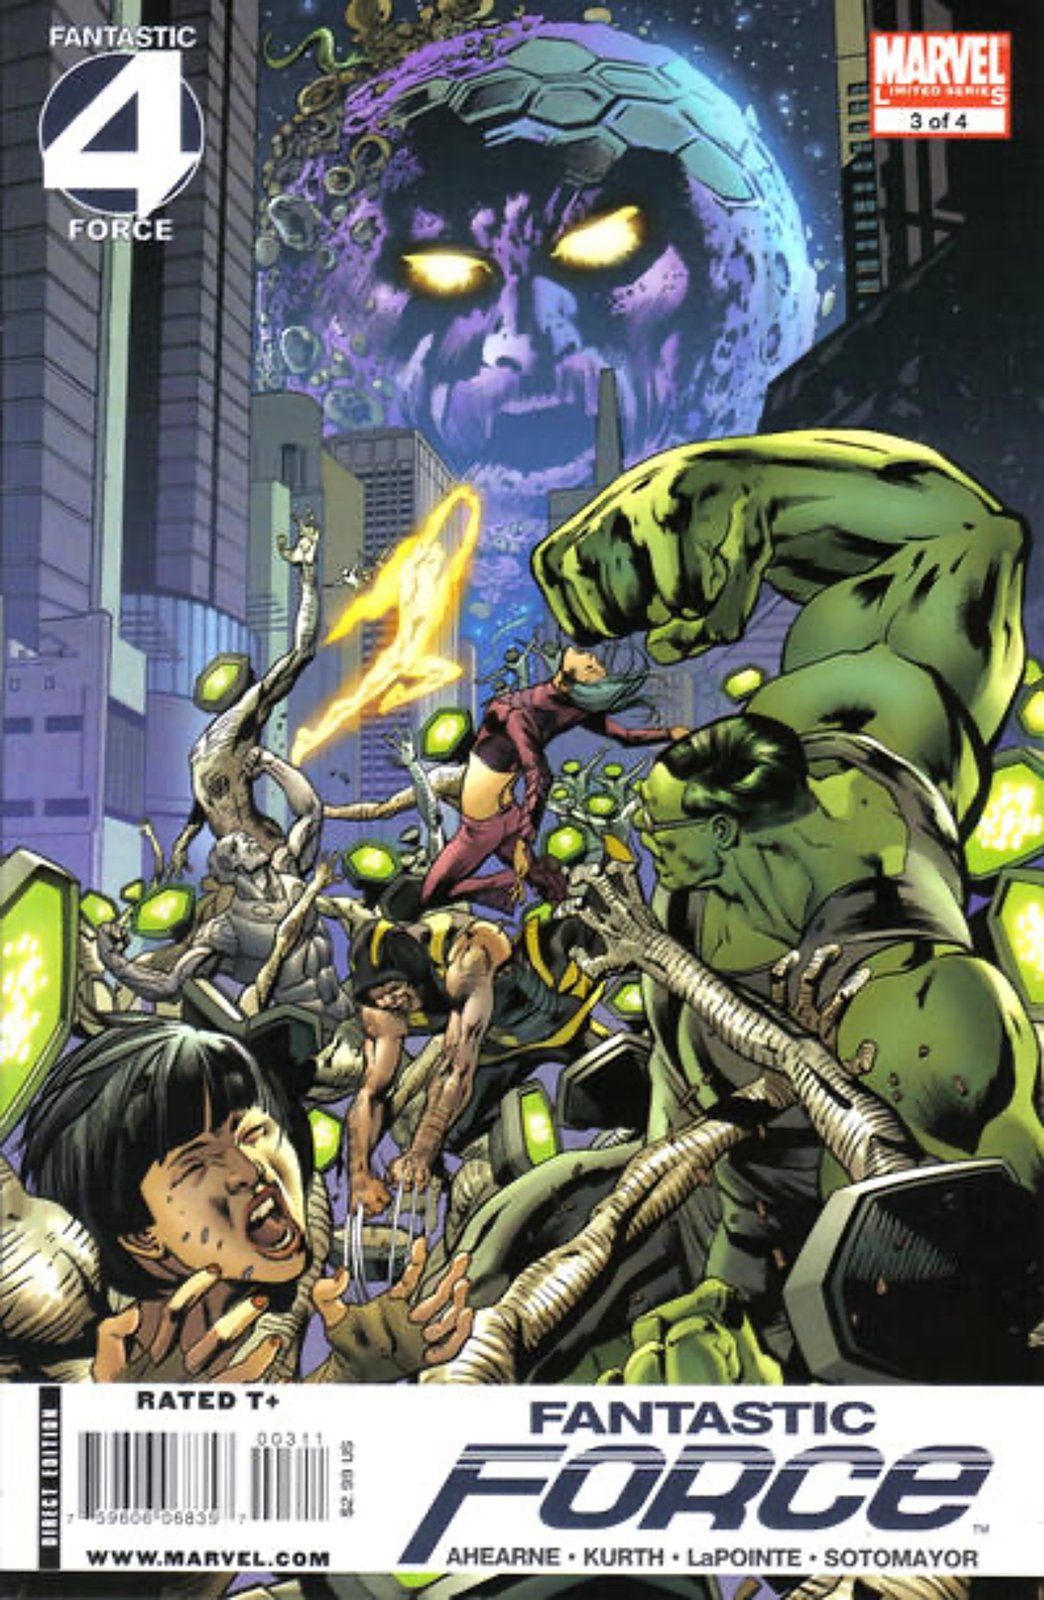 Fantastic Force #3 (2009) Marvel Comics